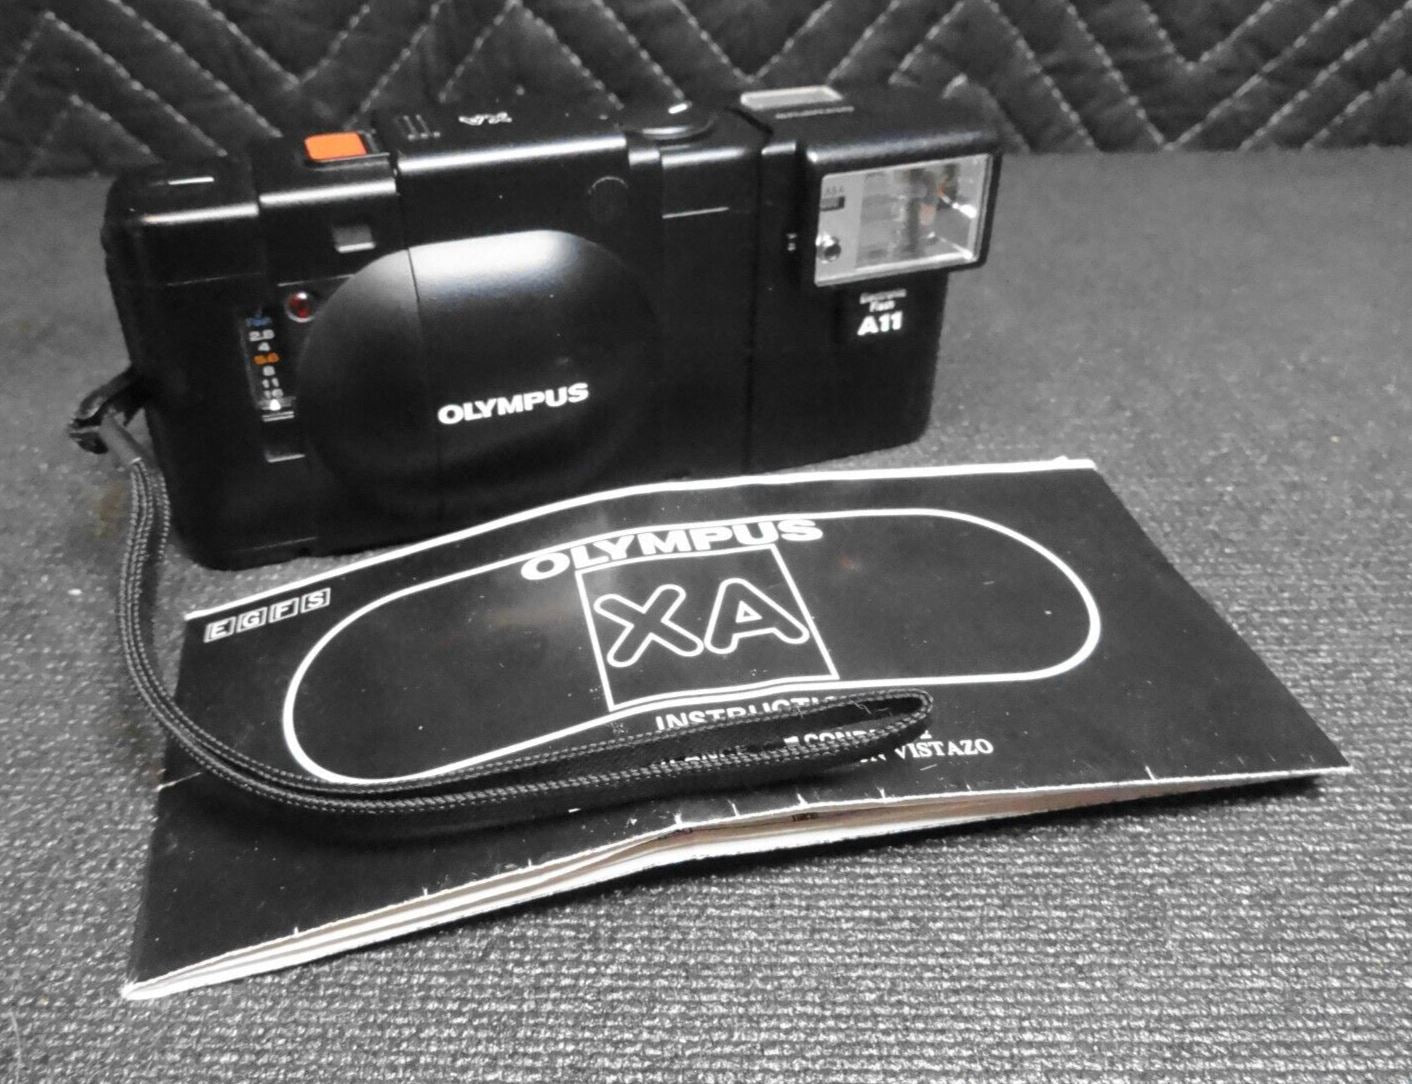 Olympus XA 35mm Rangefinder Film Camera w/ A11 Flash & Instructions